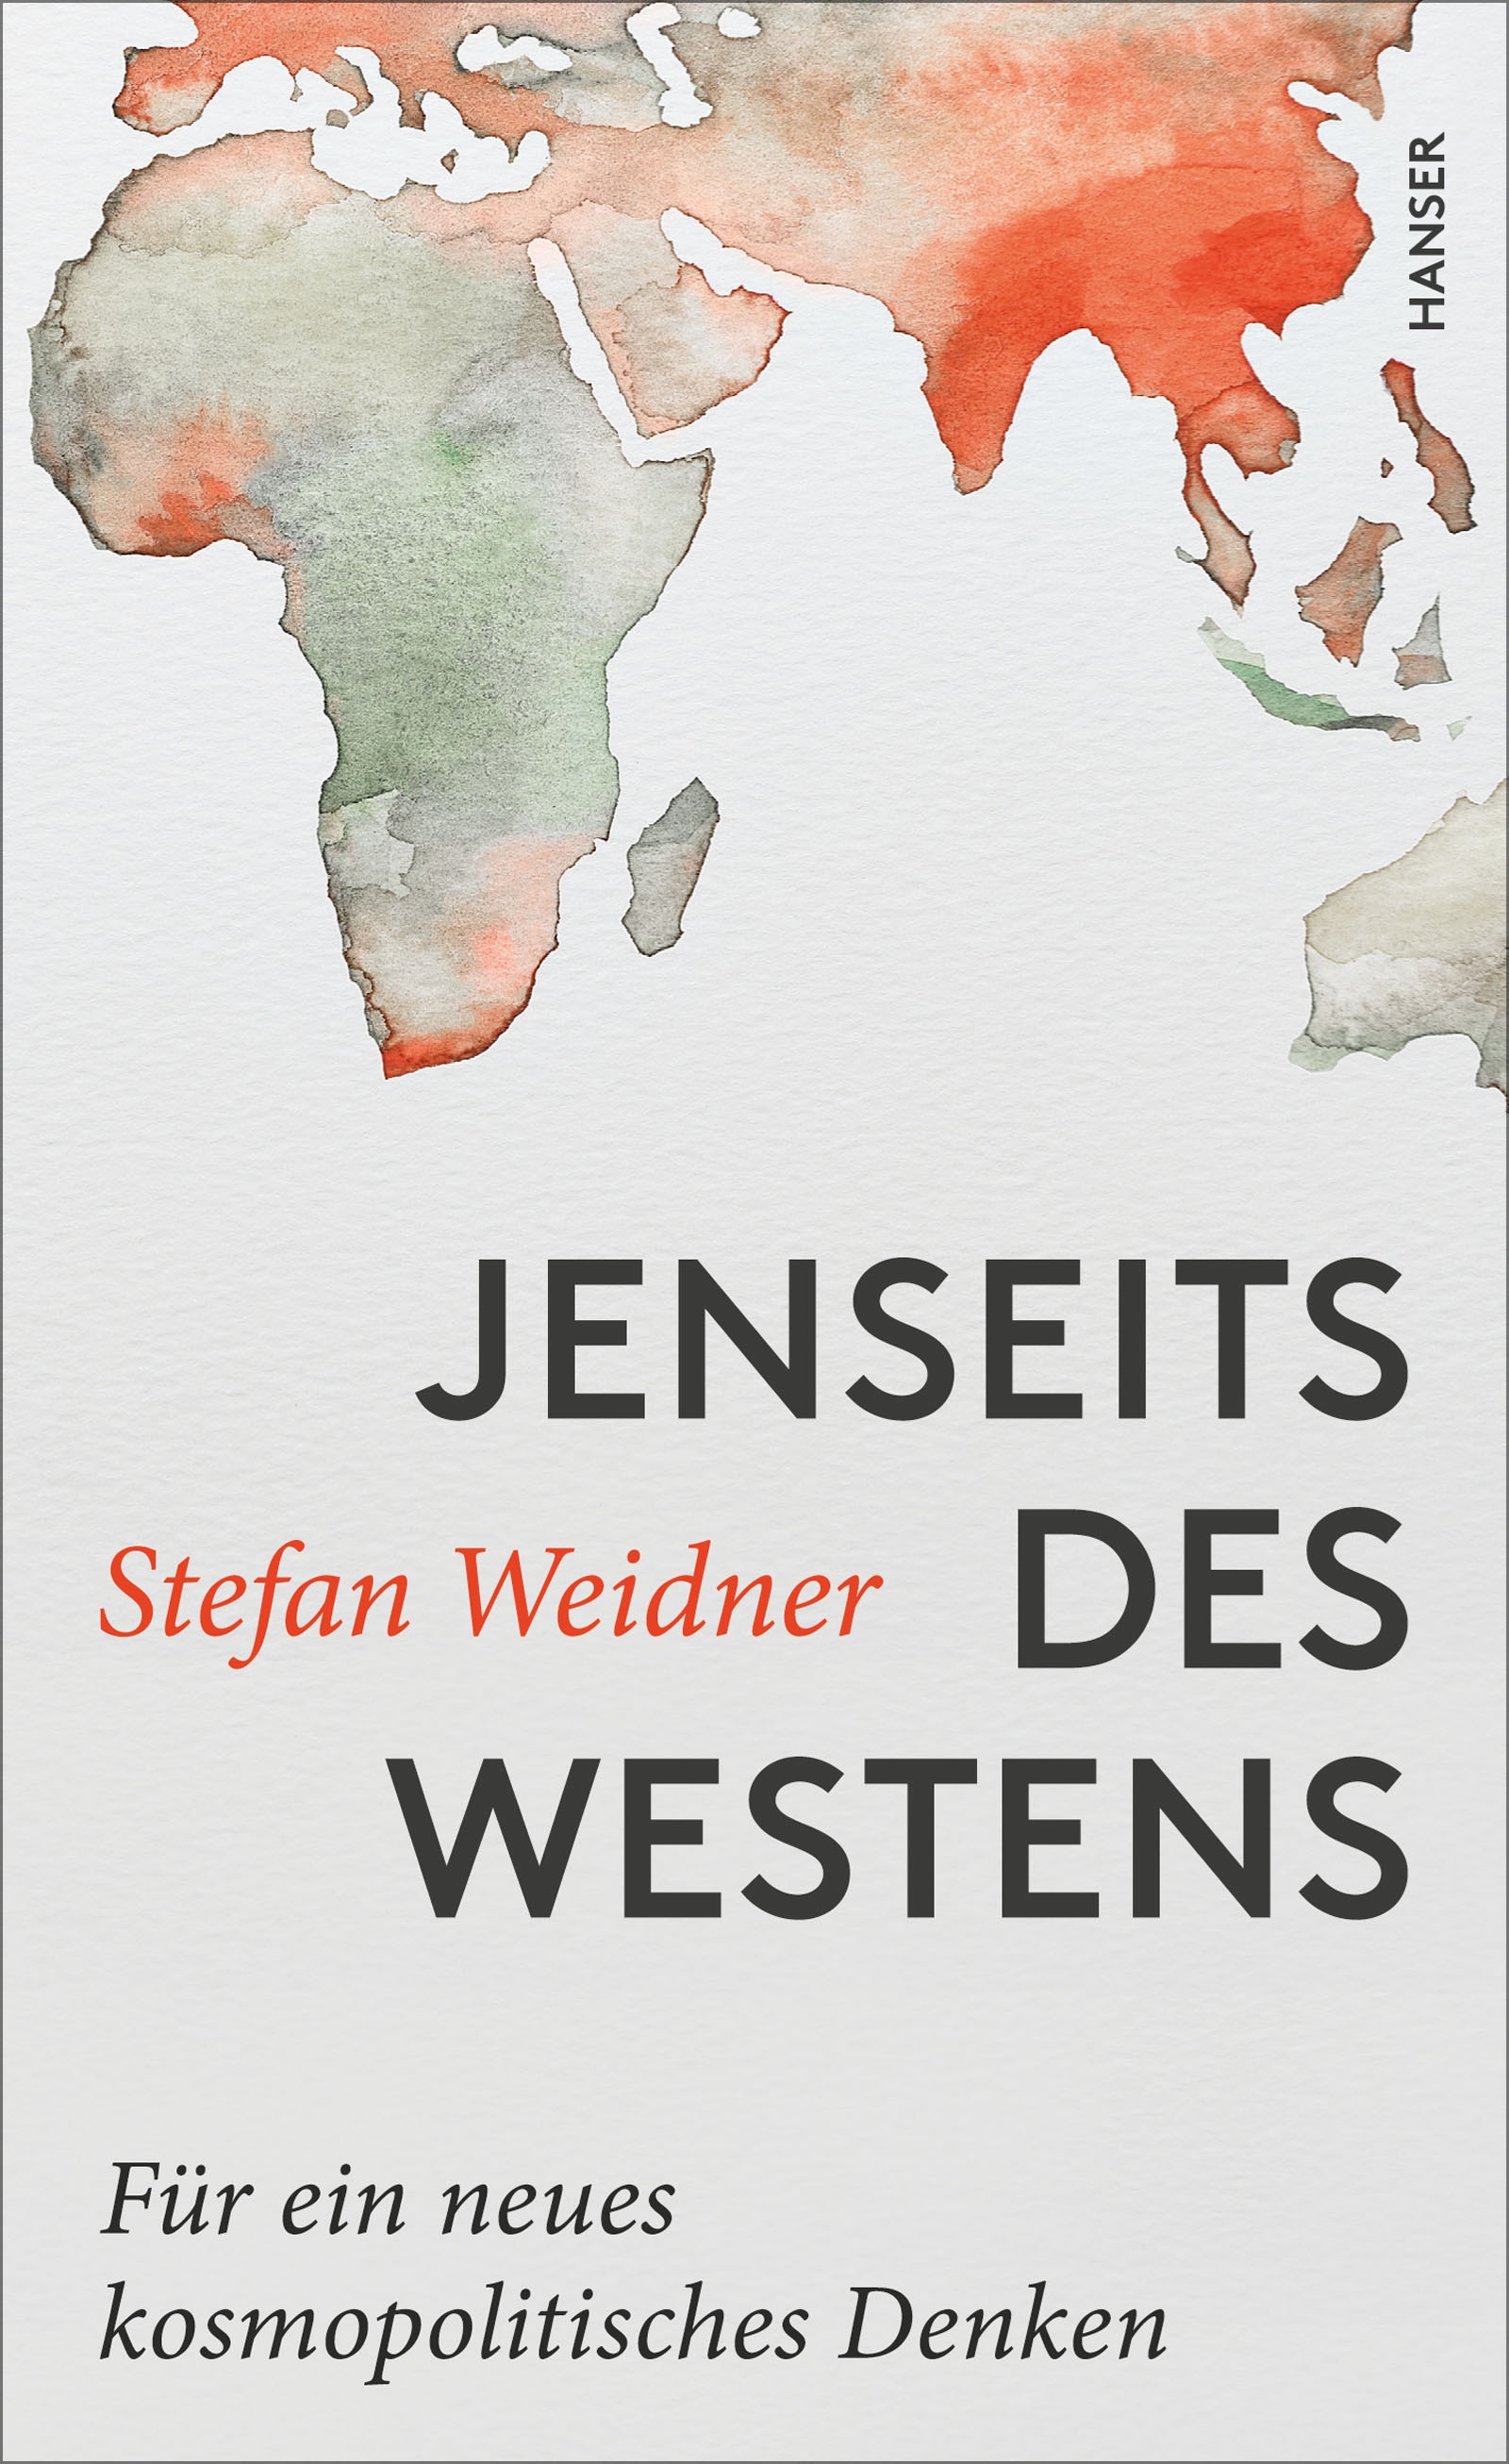 Buchcover "Jenseits des Westens: Für ein neues kosmopolitisches Denken" von Stefan Weidner im Hanser Verlag